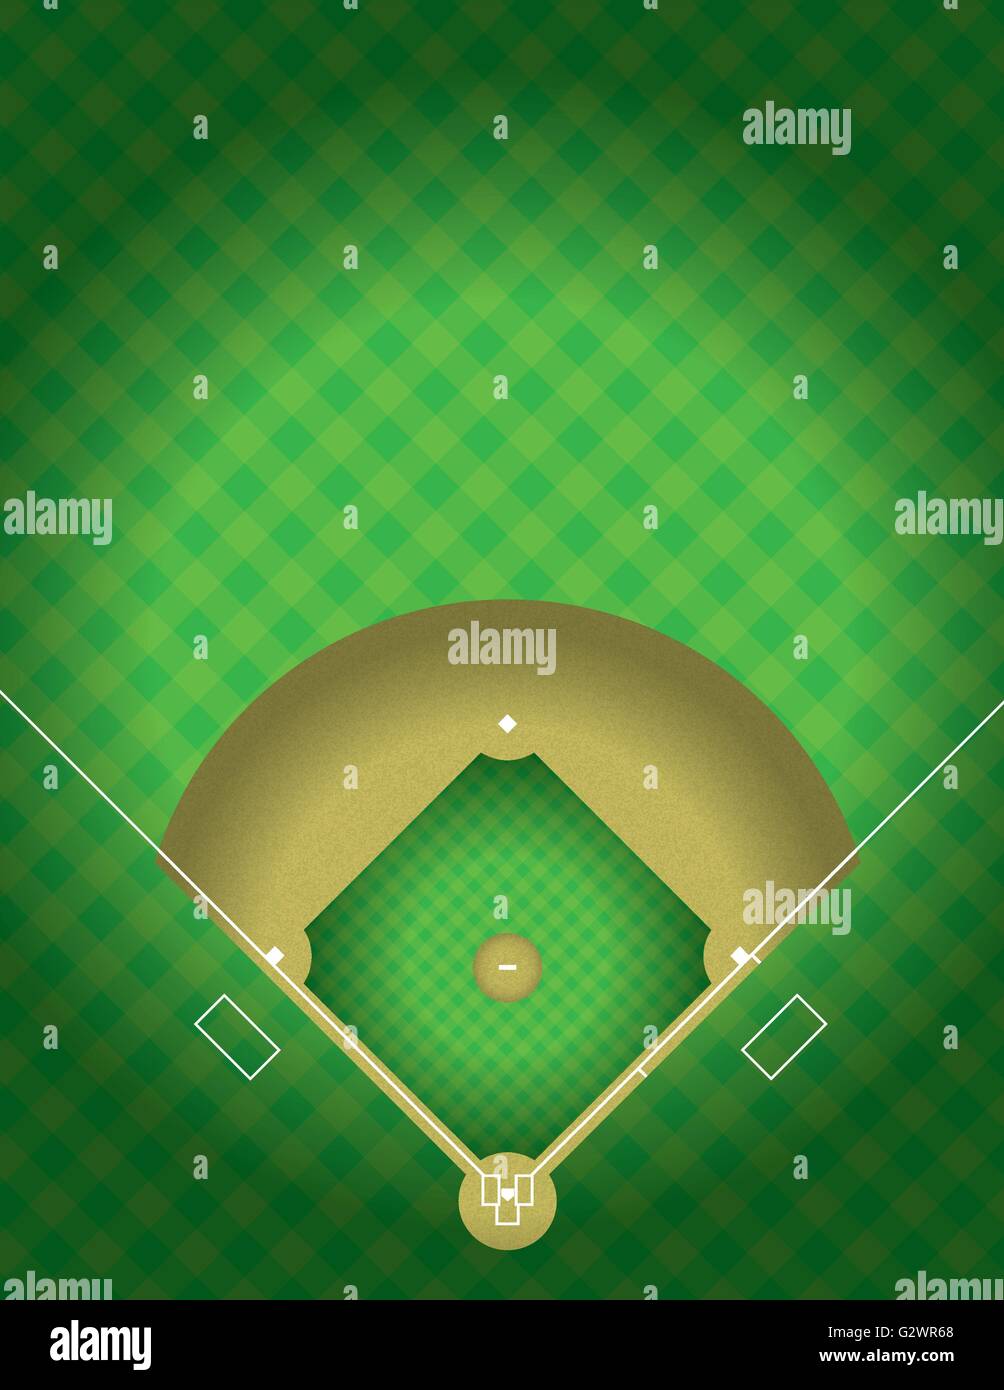 Eine Vektor-Illustration der arial Ansicht von einem Baseball-Feld. EPS 10. Datei enthält Folien. Stock Vektor